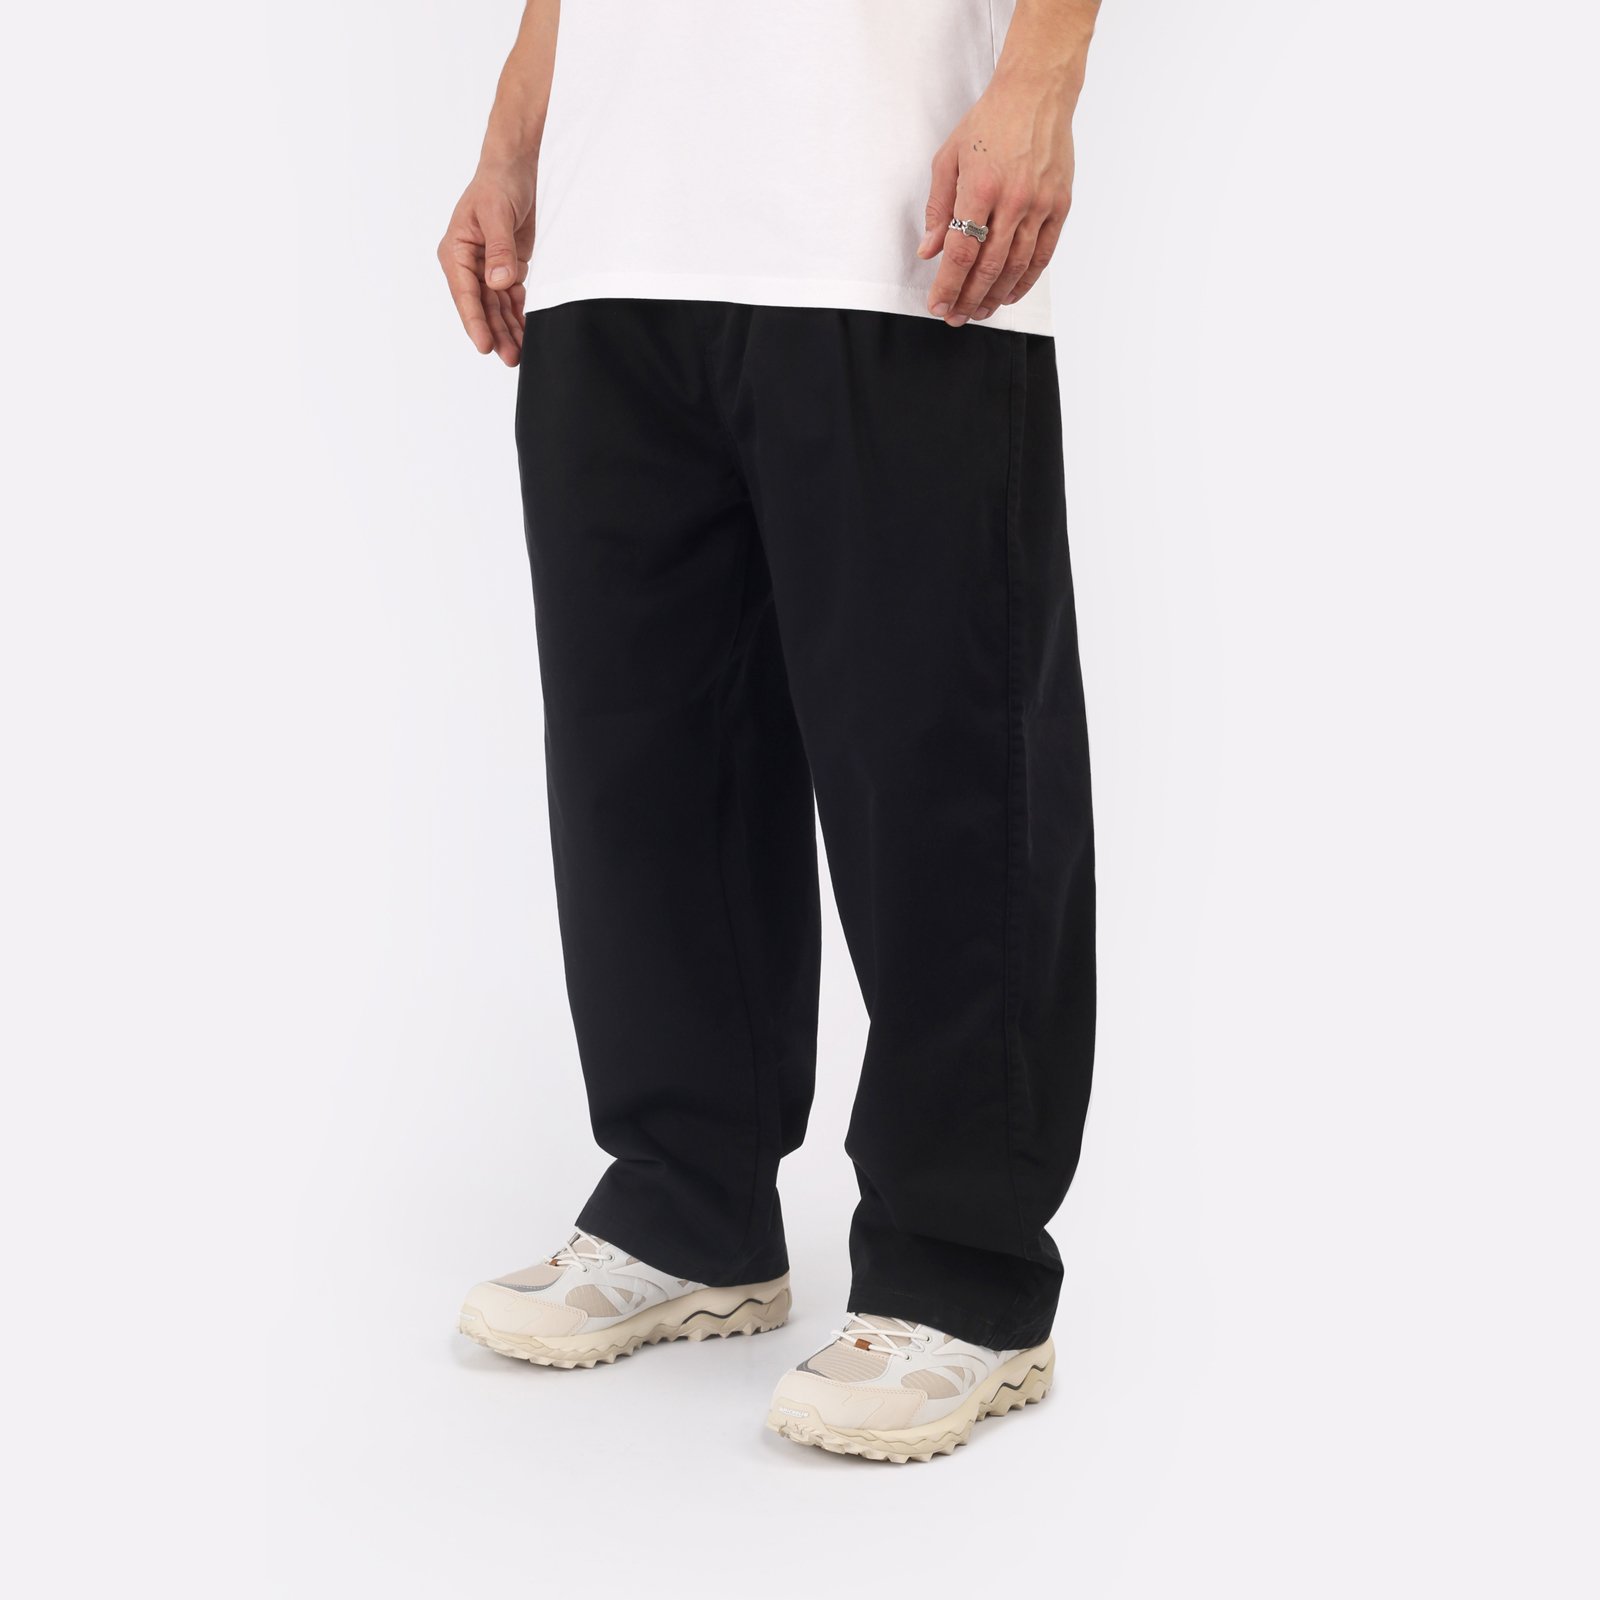 мужские черные брюки Carhartt WIP Marv Pant I033129-black - цена, описание, фото 3